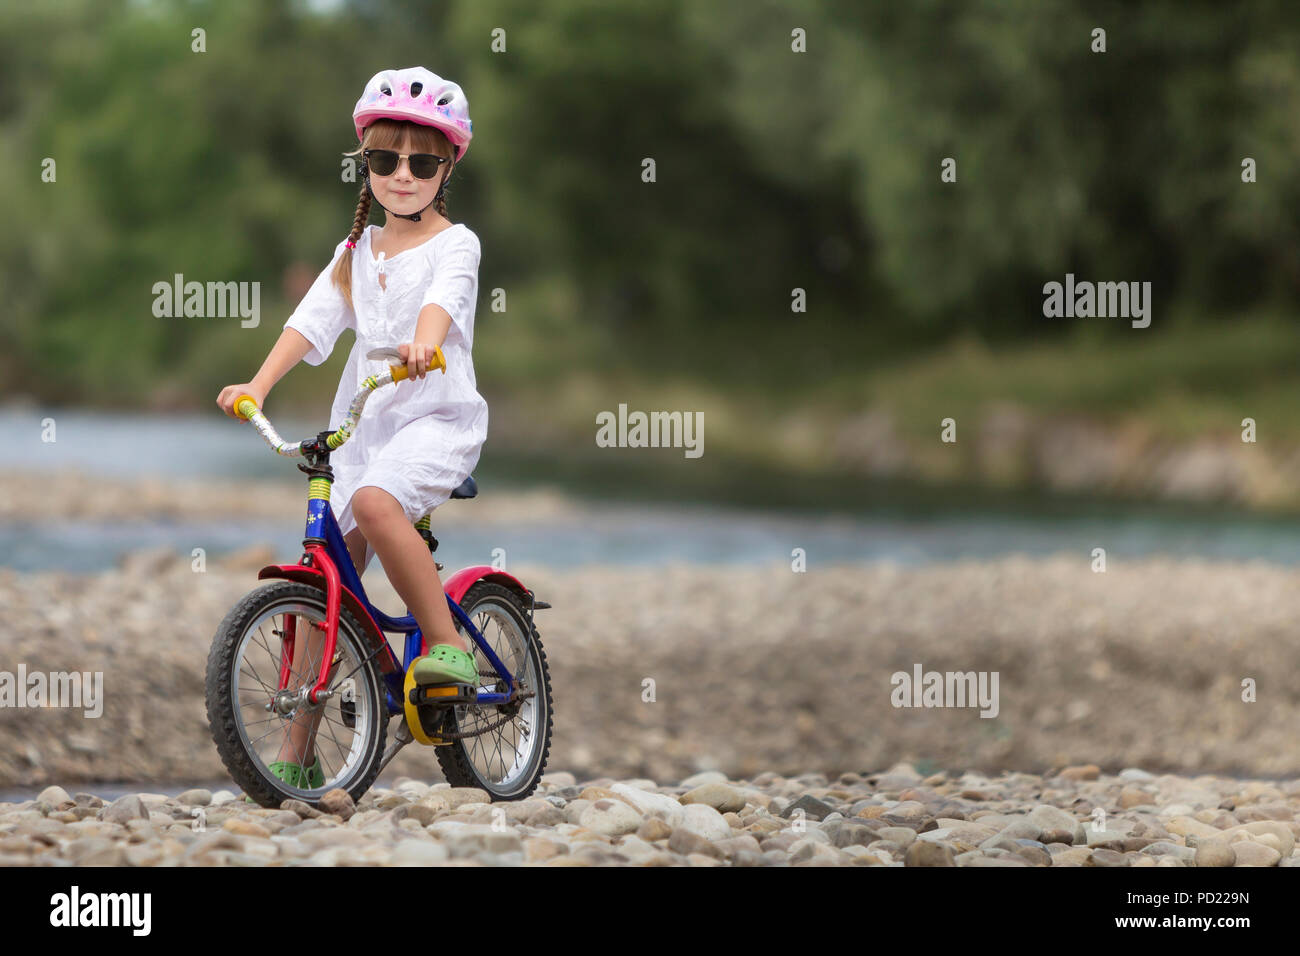 Linda jovencita en ropa blanca, gafas de sol con largas trenzas llevar casco de seguridad rosa montando bicicleta infantil de guijarros de río verde borrosa Foto de stock